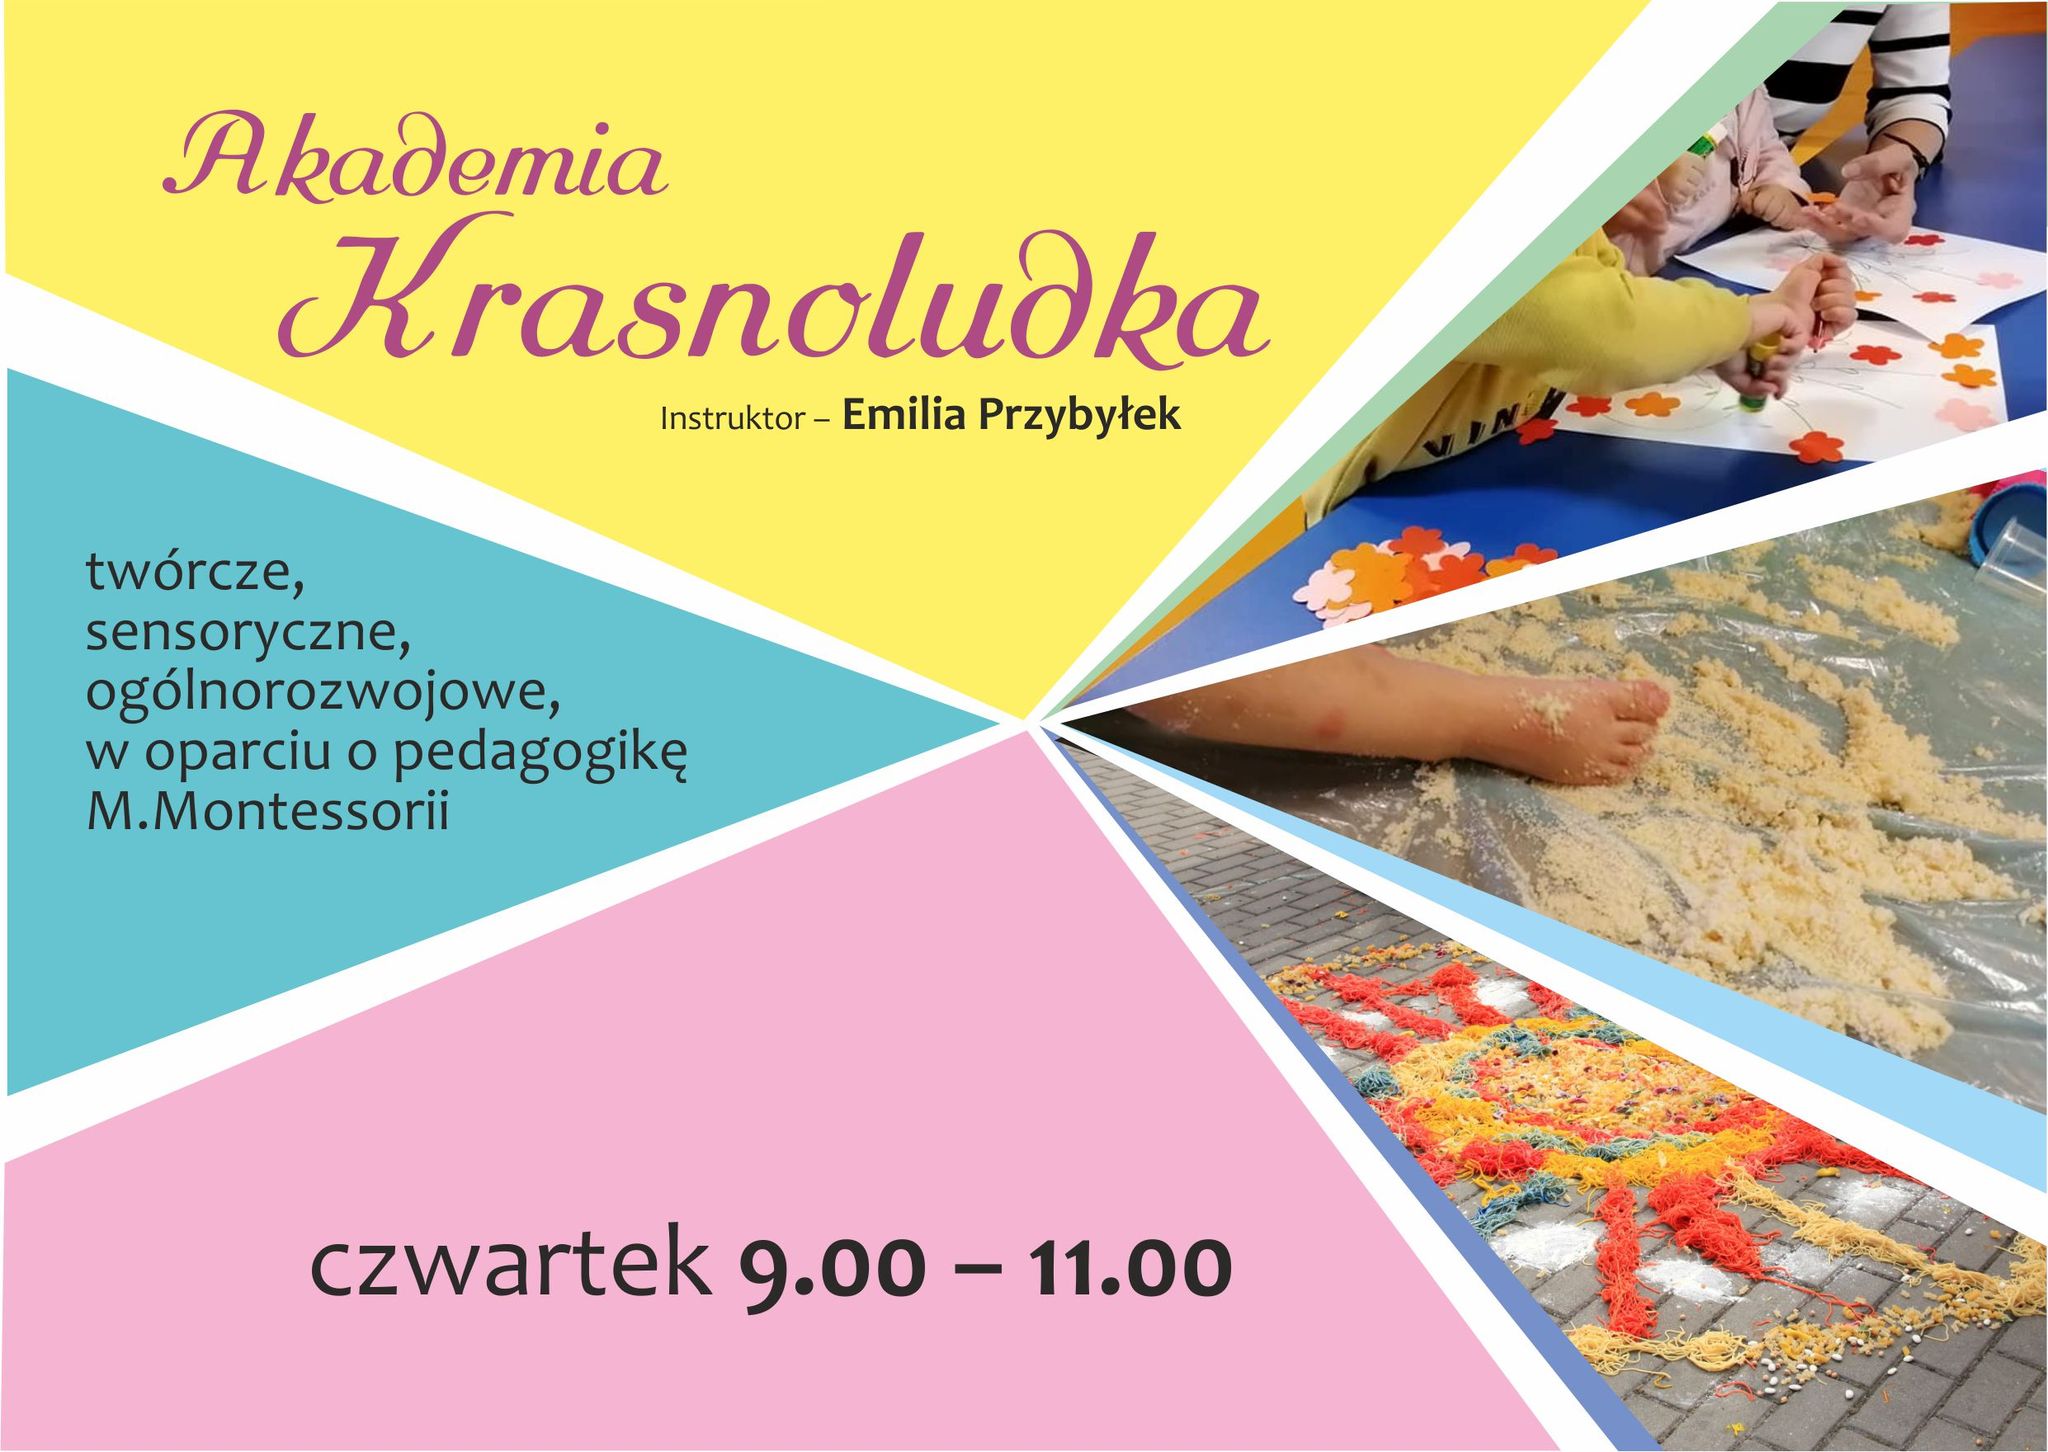 Akademia Krasnoludka, instruktor: Emilia Przybyłek, zajęcia twórcze, sensoryczne, ogólnorozwojowe, w oparciu o pedagogikę M.Montessori czwartek 9:00 - 11:00 